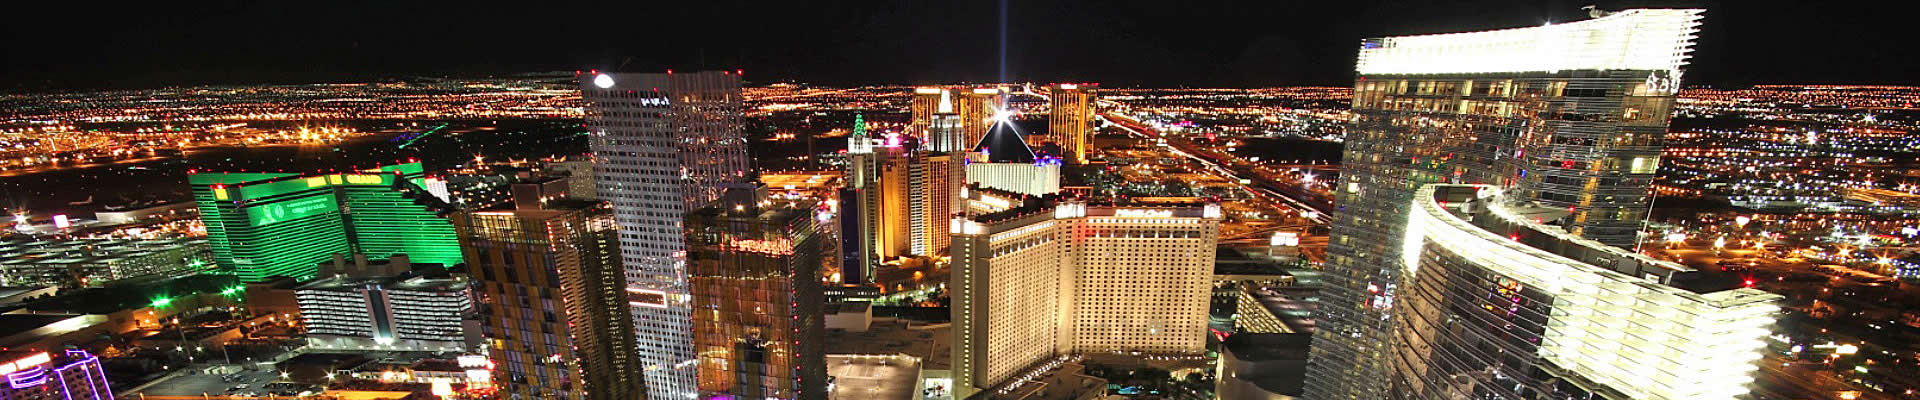 Tours de nuit sur le Las Vegas Strip